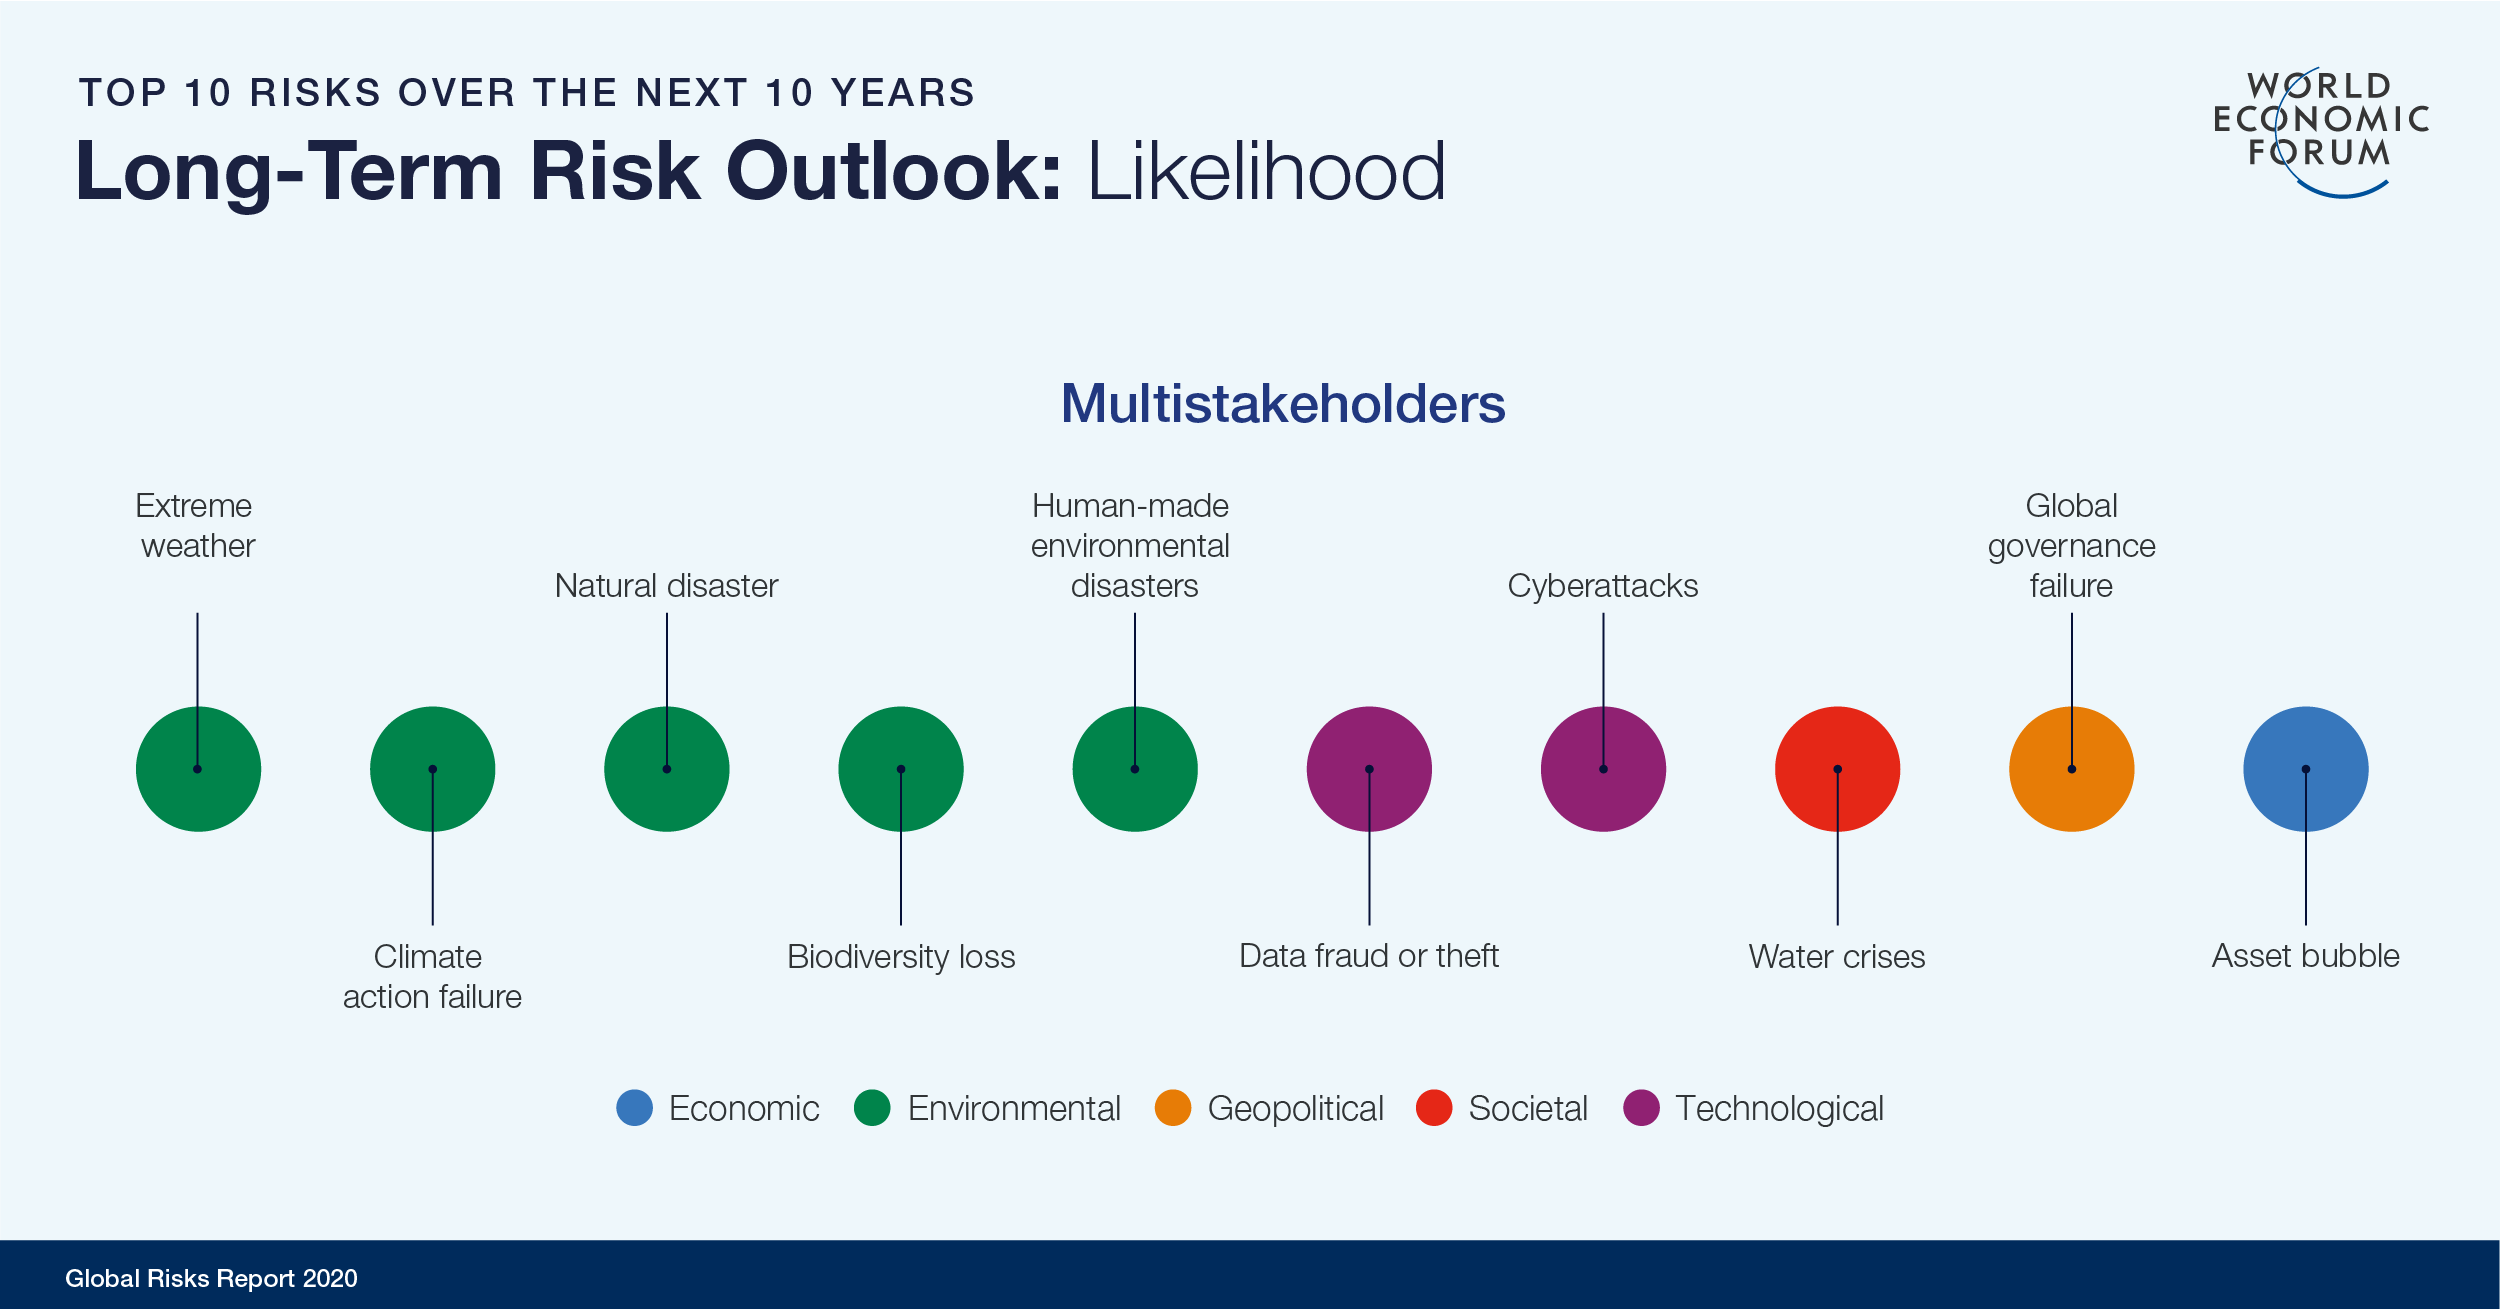 WEF 2020 Risk Outlook Likelihood